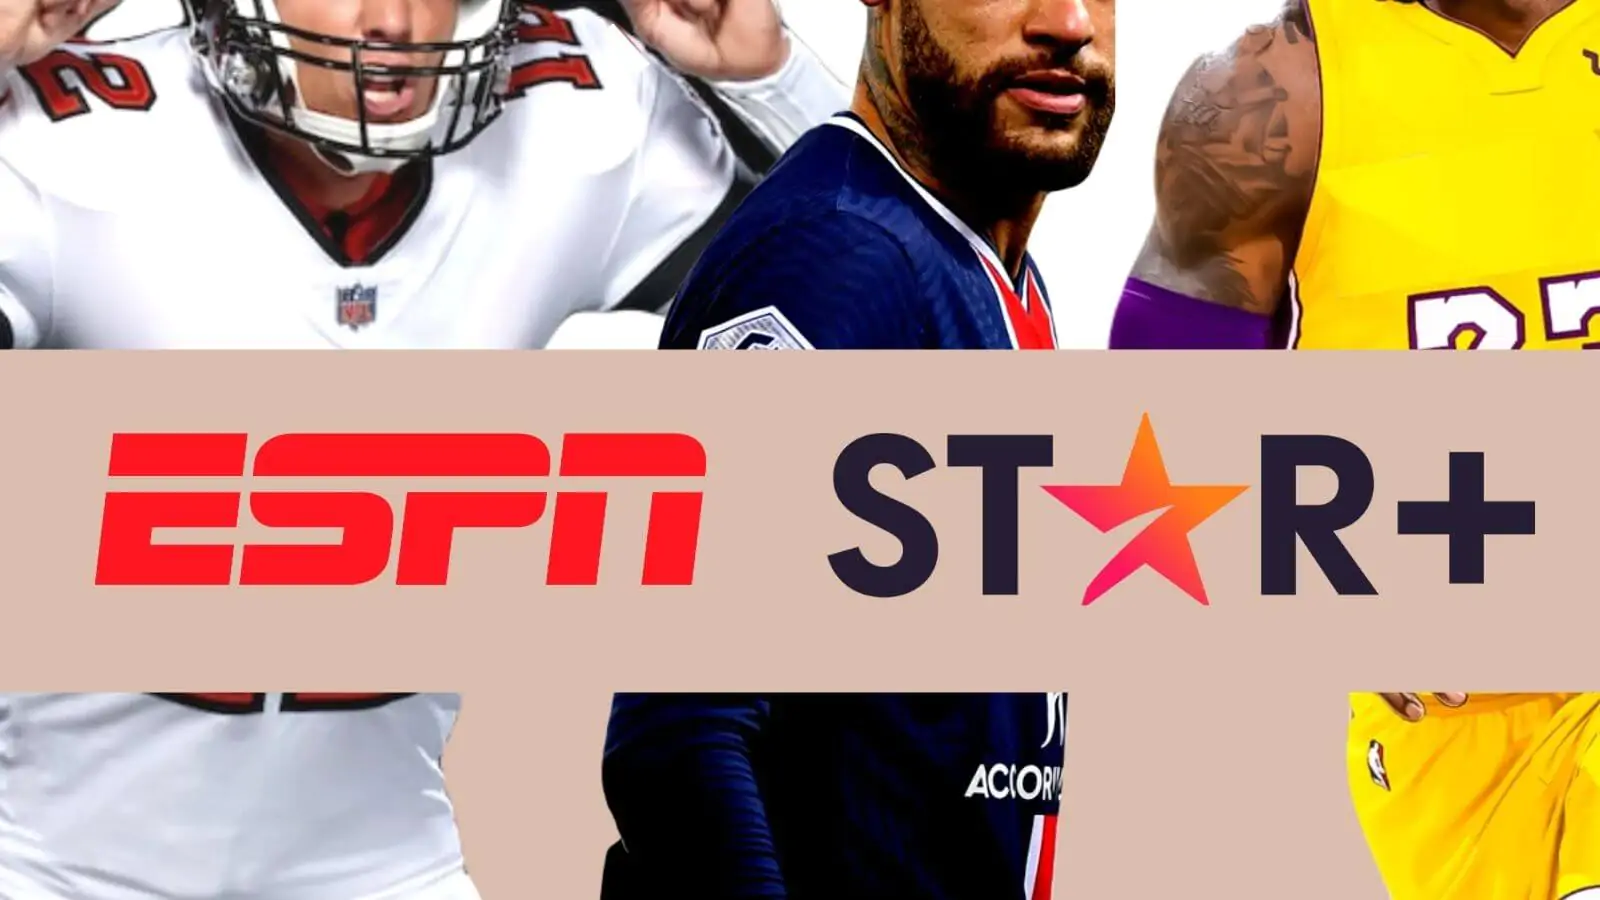 Star+ | Muitos esportes chegam a plataforma, incluindo Messi, Neymar, Tom Brady, e mais